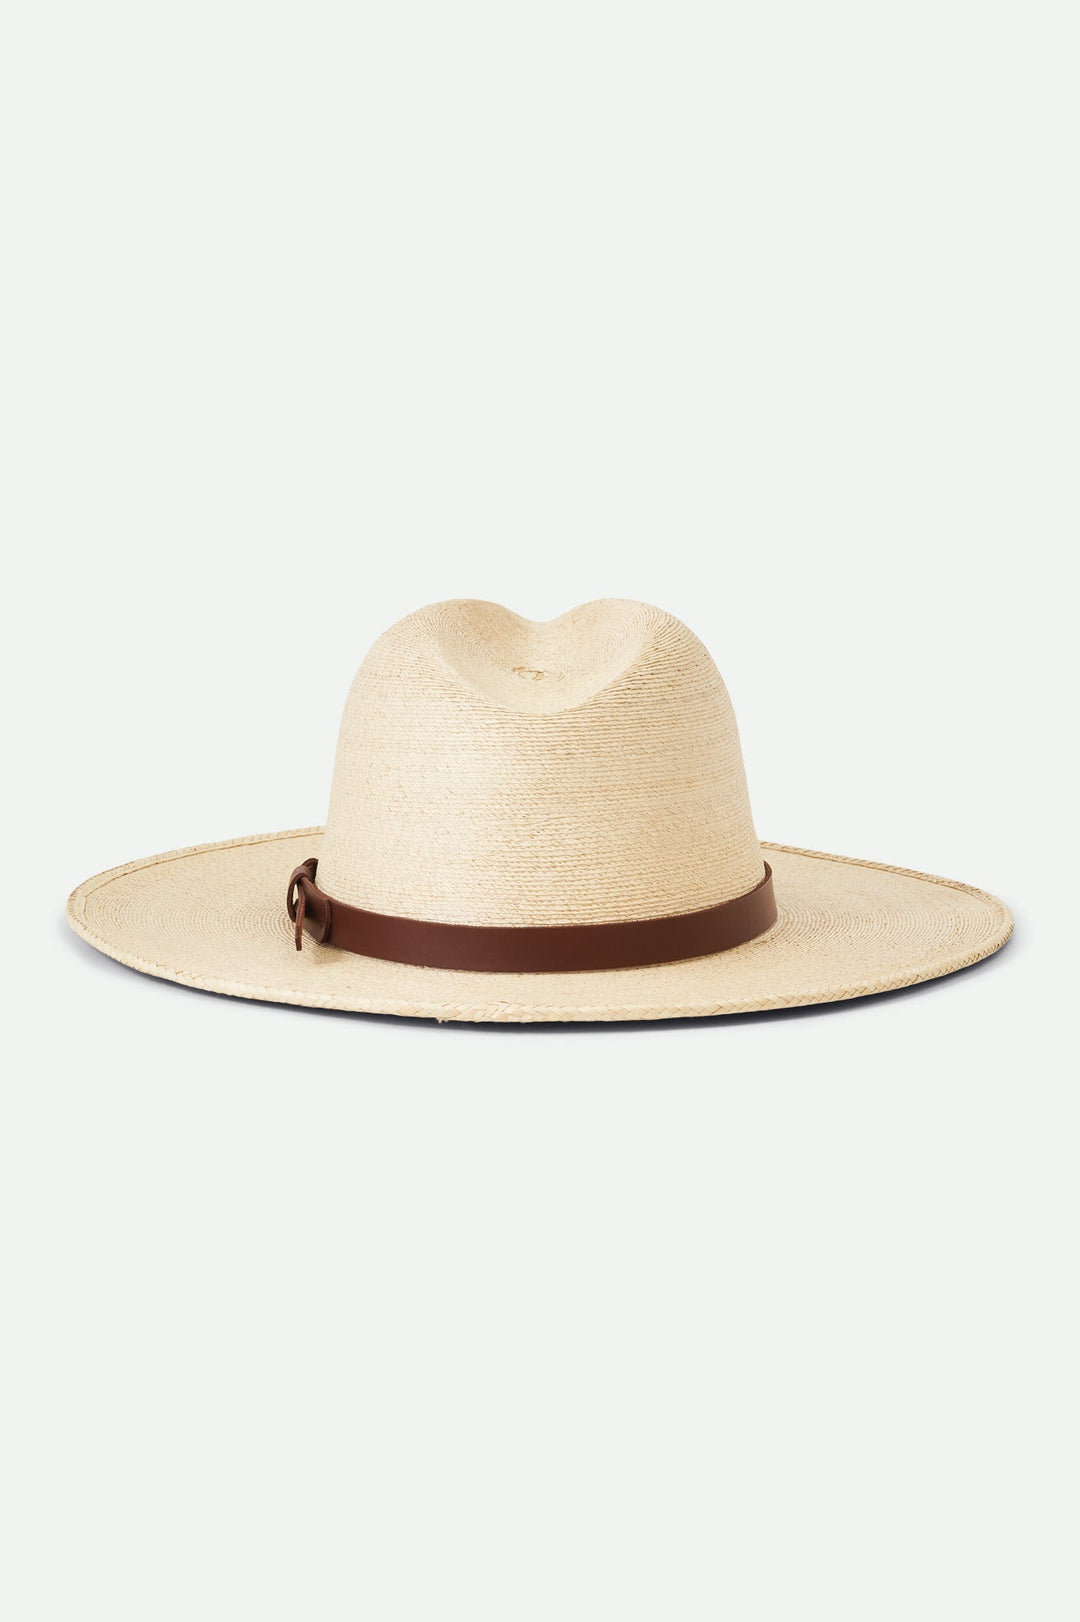 Field Proper Straw Hat - Sun Diego Boardshop